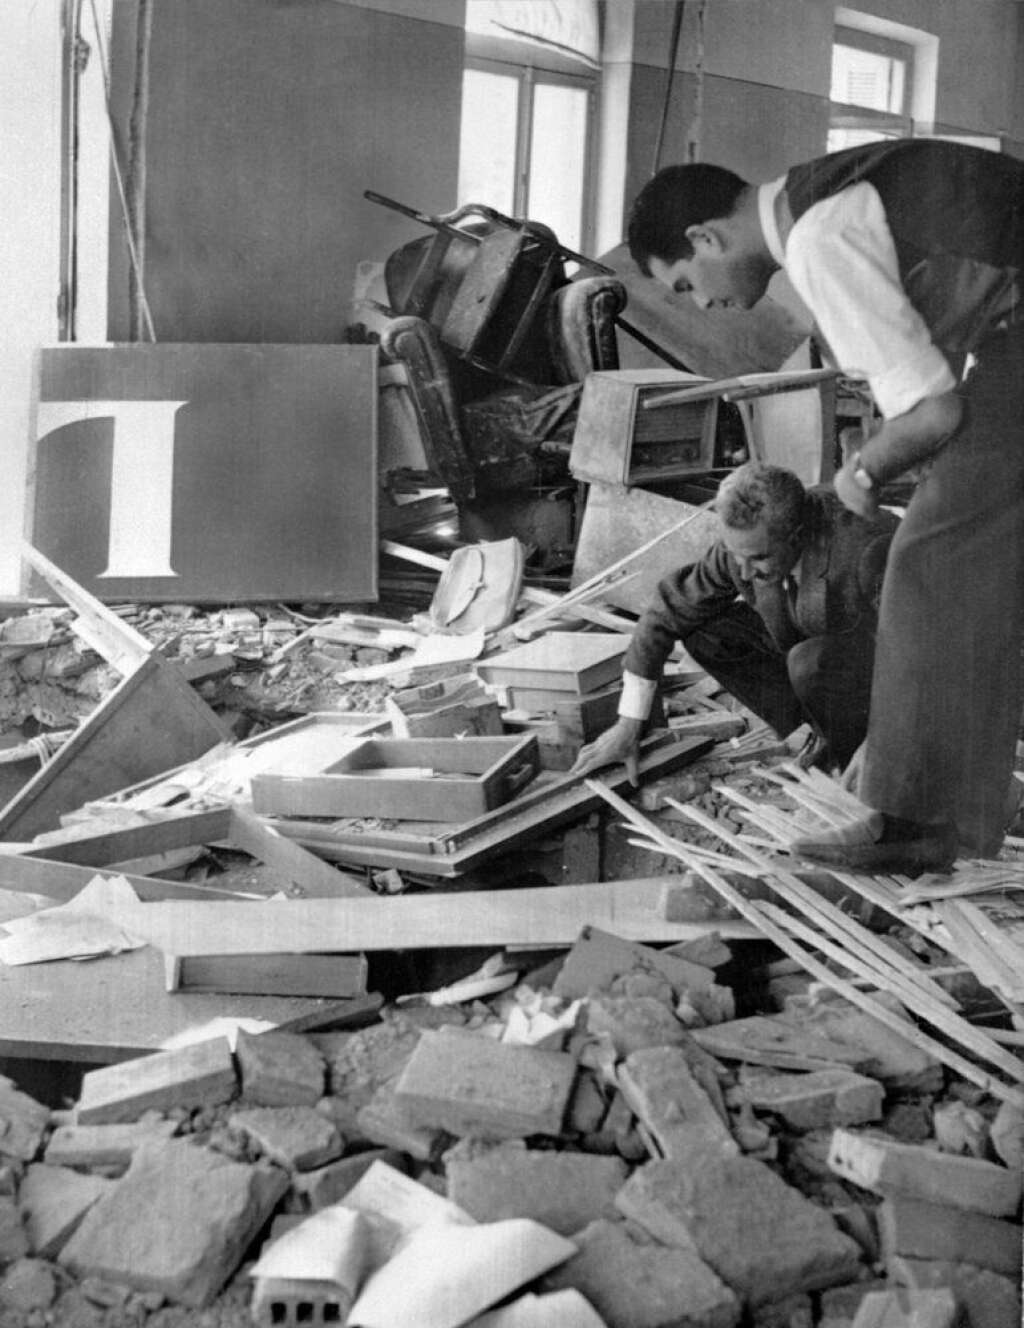 Avril 1962: l'OAS cible le "Journal d'Alger" - De personnes examinant les décombres des locaux du "Journal d'Alger" après un attentat à la bombe, pendant la guerre d'Algérie, après la signature des accords d'Evian, alors que l'OAS poursuit sa politique de la terre brûlée